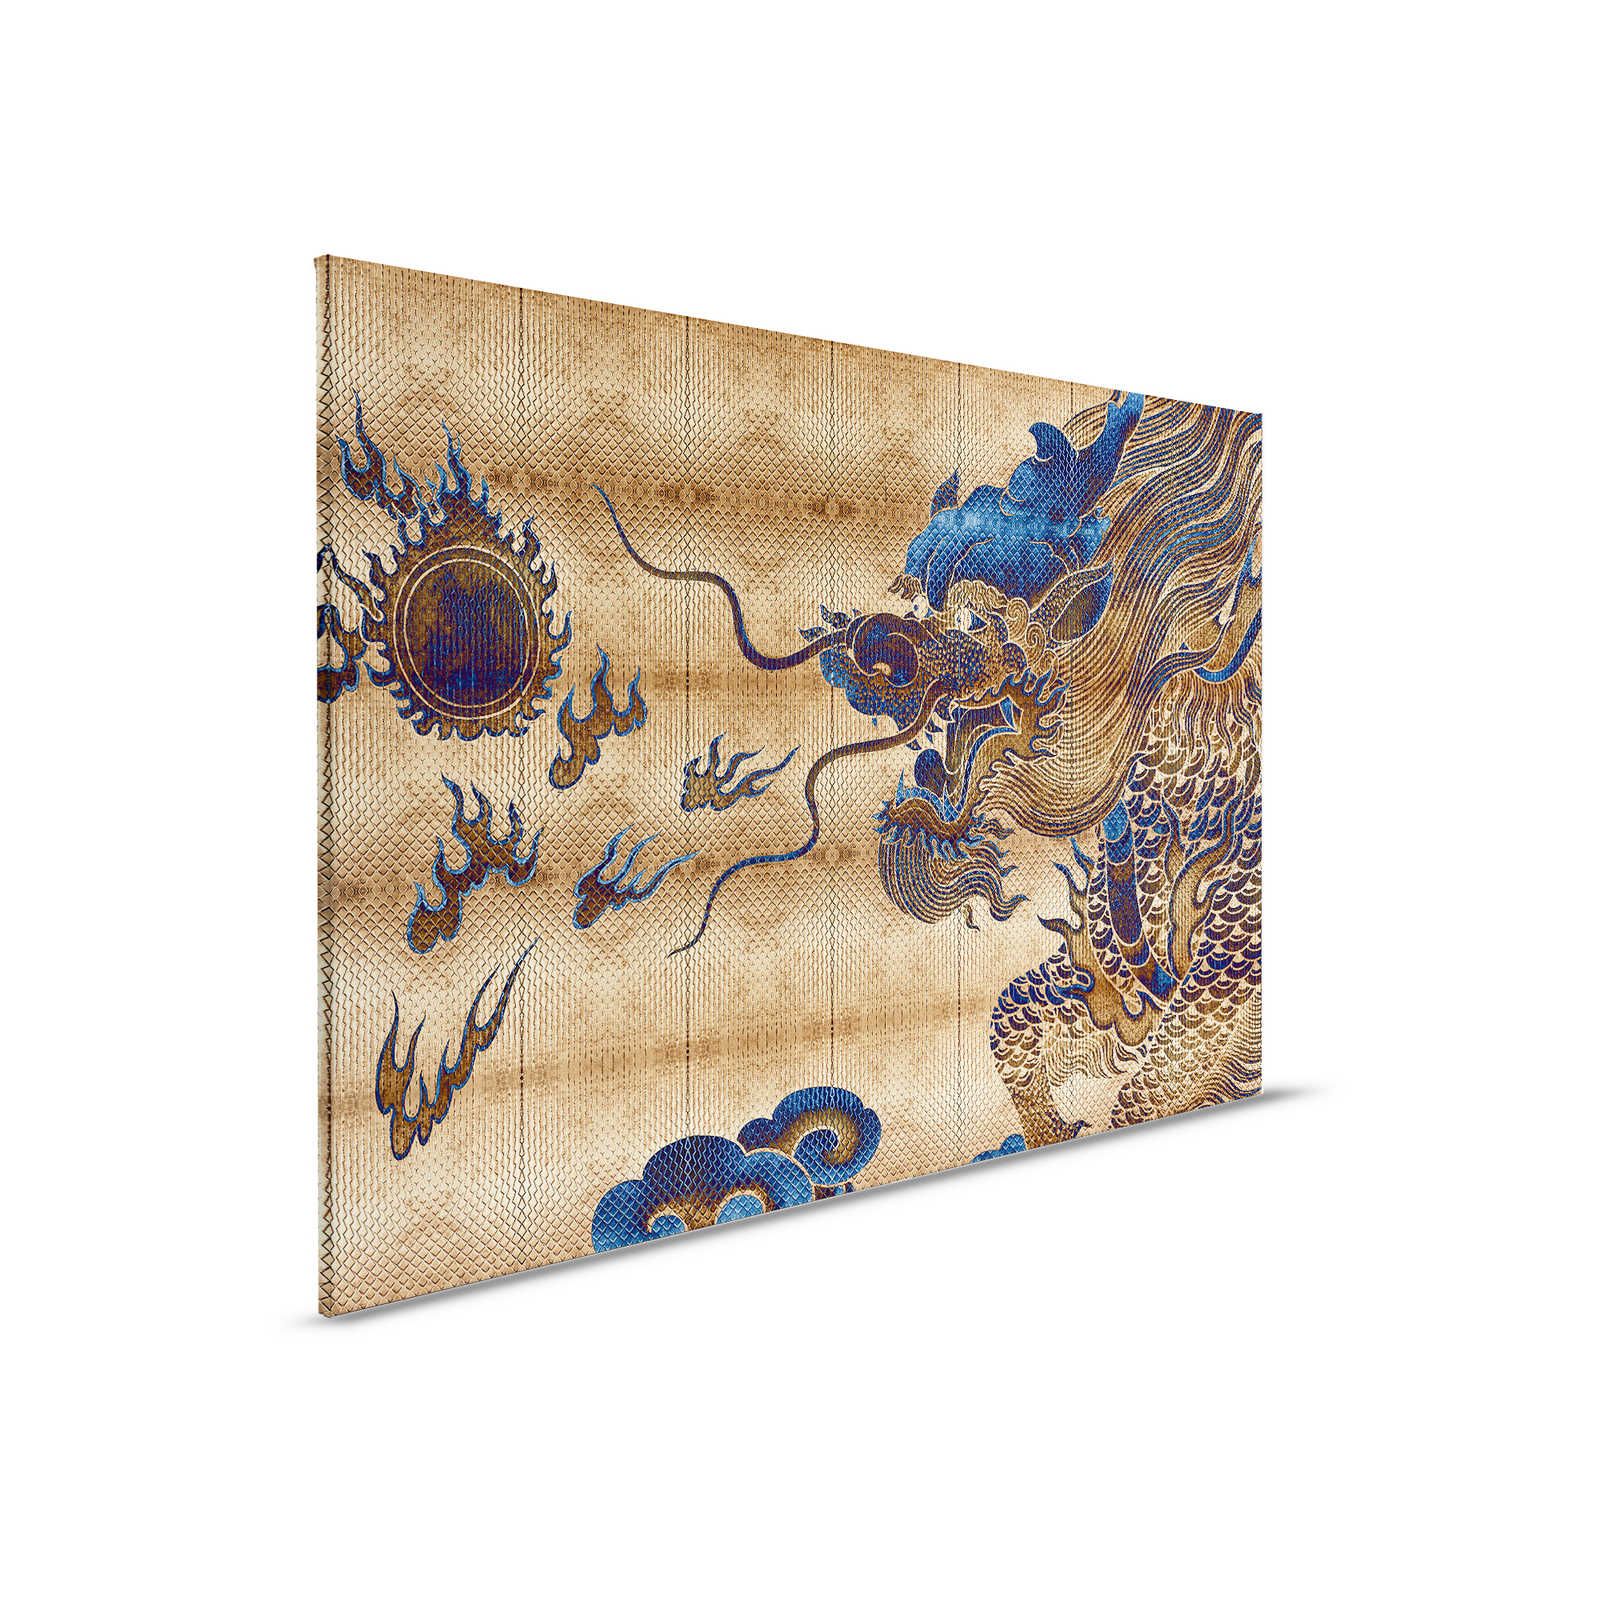 Shenzen 2 - Pintura en lienzo Dragón de oro en estilo asiático - 0,90 m x 0,60 m
